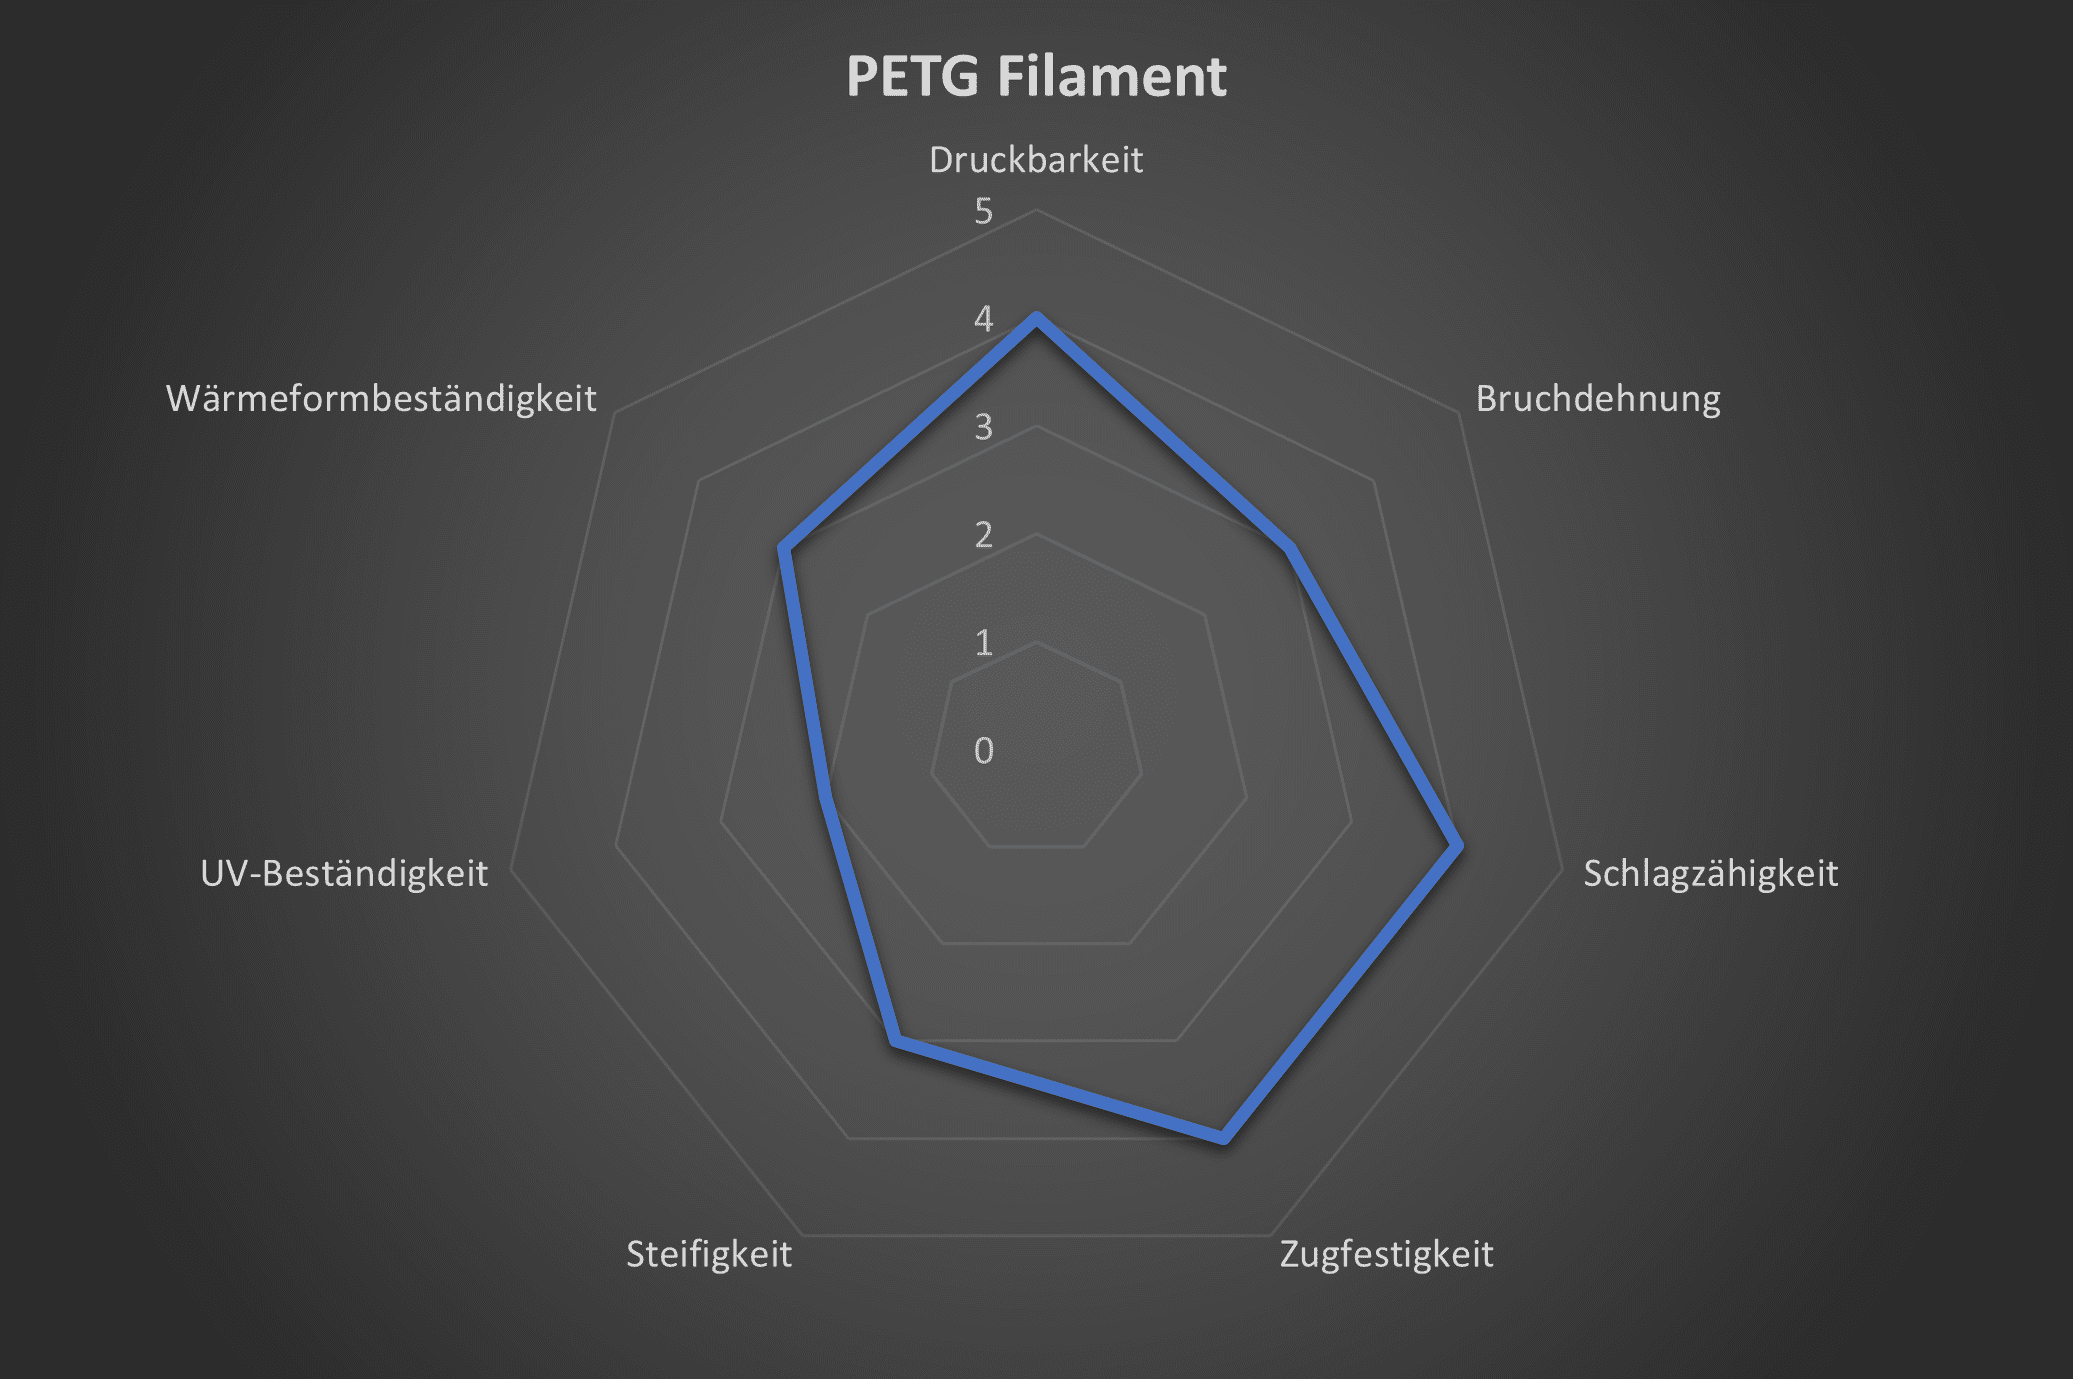 Spinnendiagramm mit den technischen eigenschaften von PETG Filament